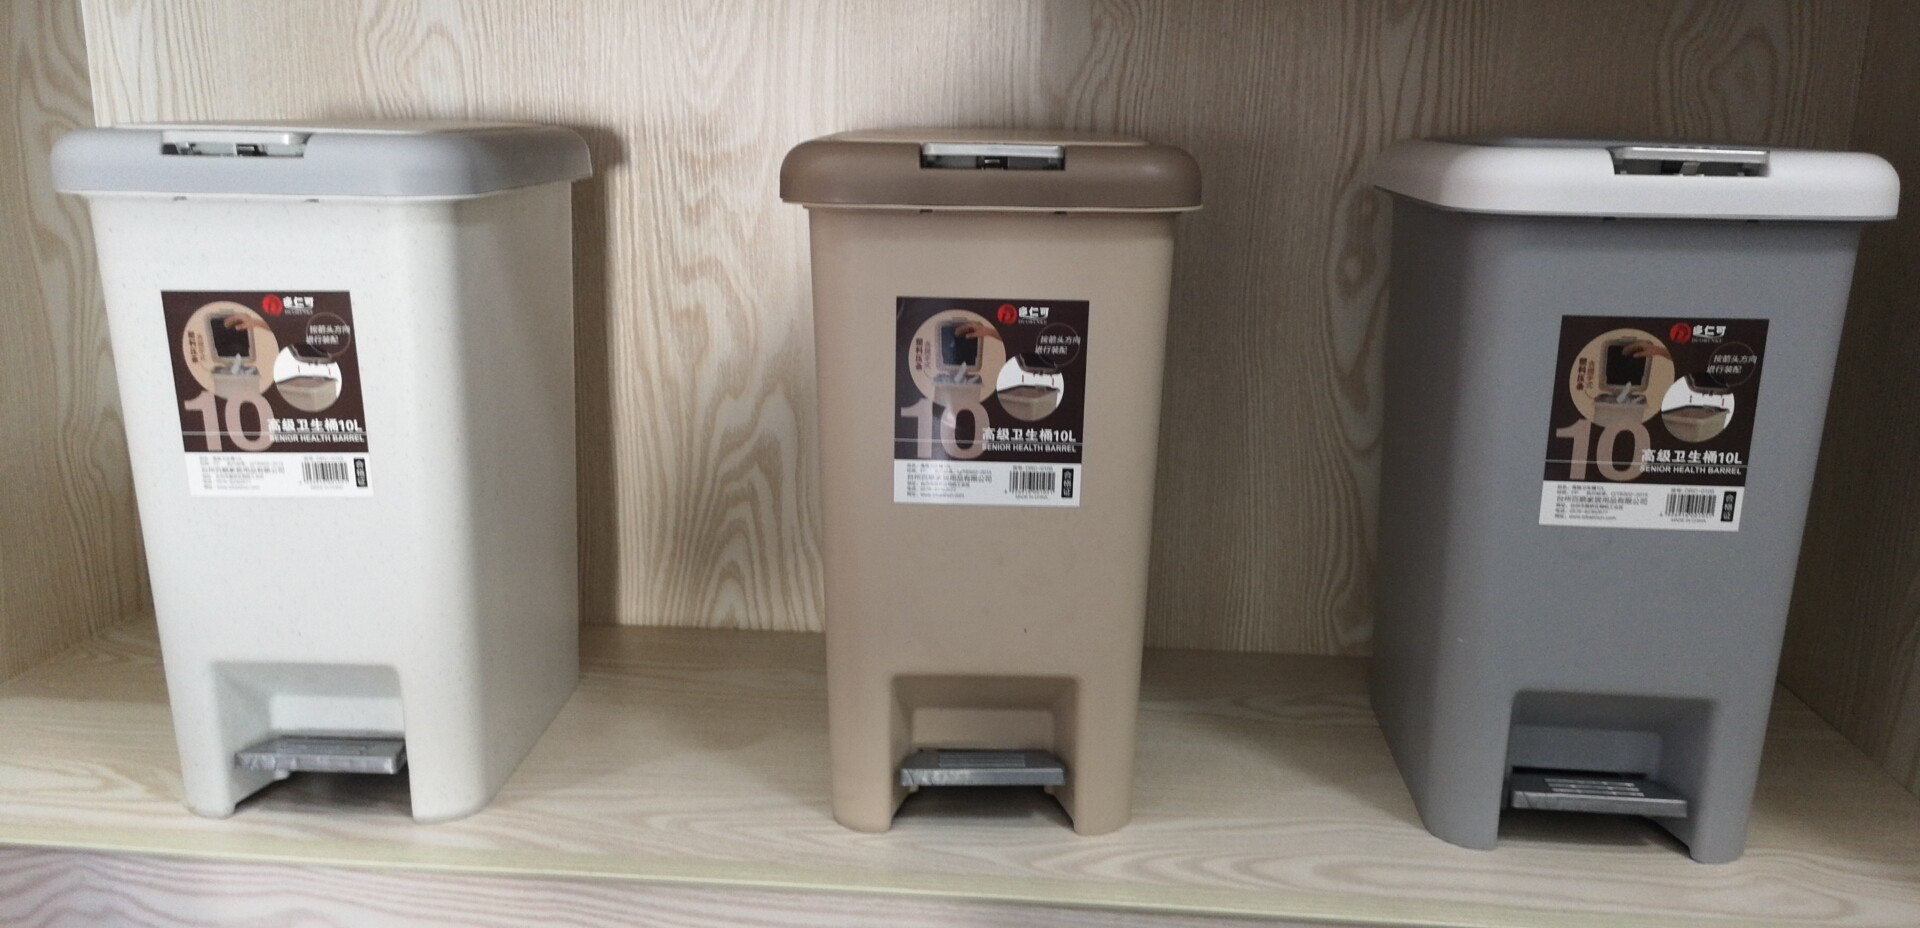 8L10L15L20L30L小号高级垃圾桶手按脚踏两用客厅有盖带内桶塑料厨房卫生桶详情4